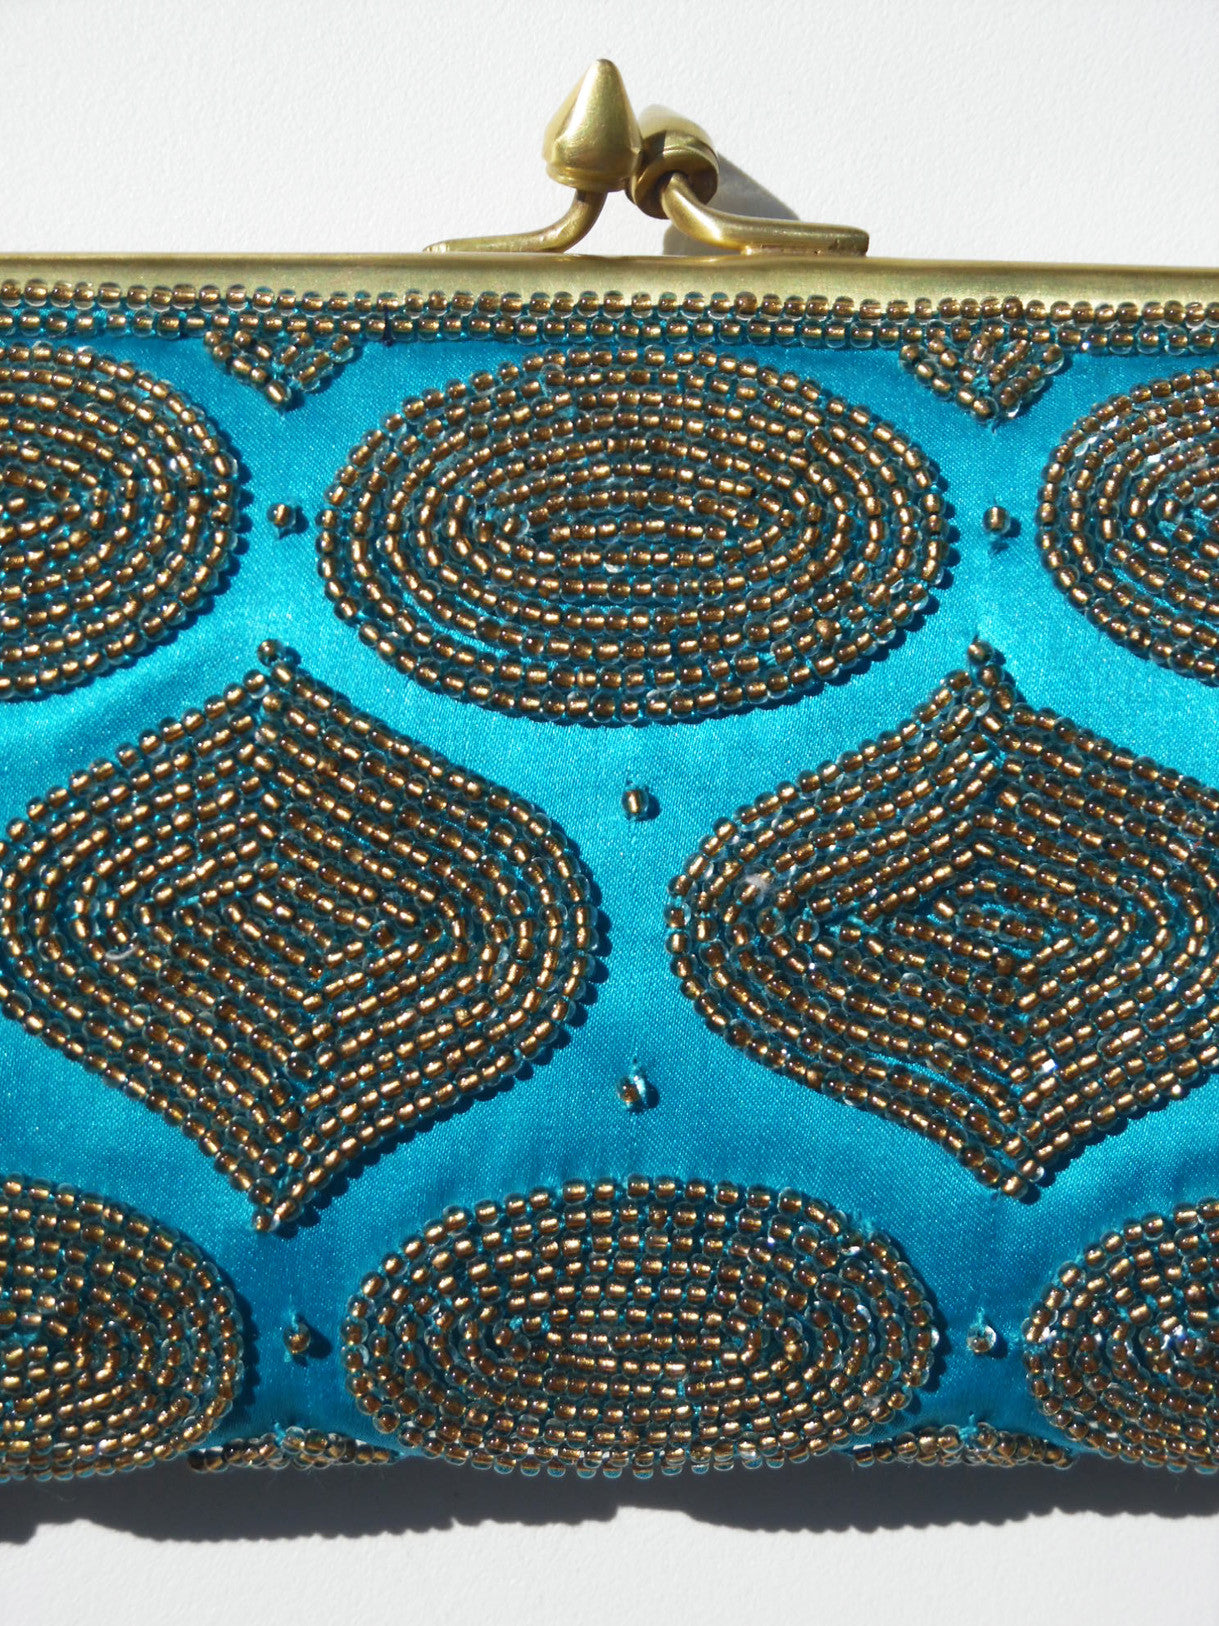 Mosaic Beaded Evening Bag On Satin